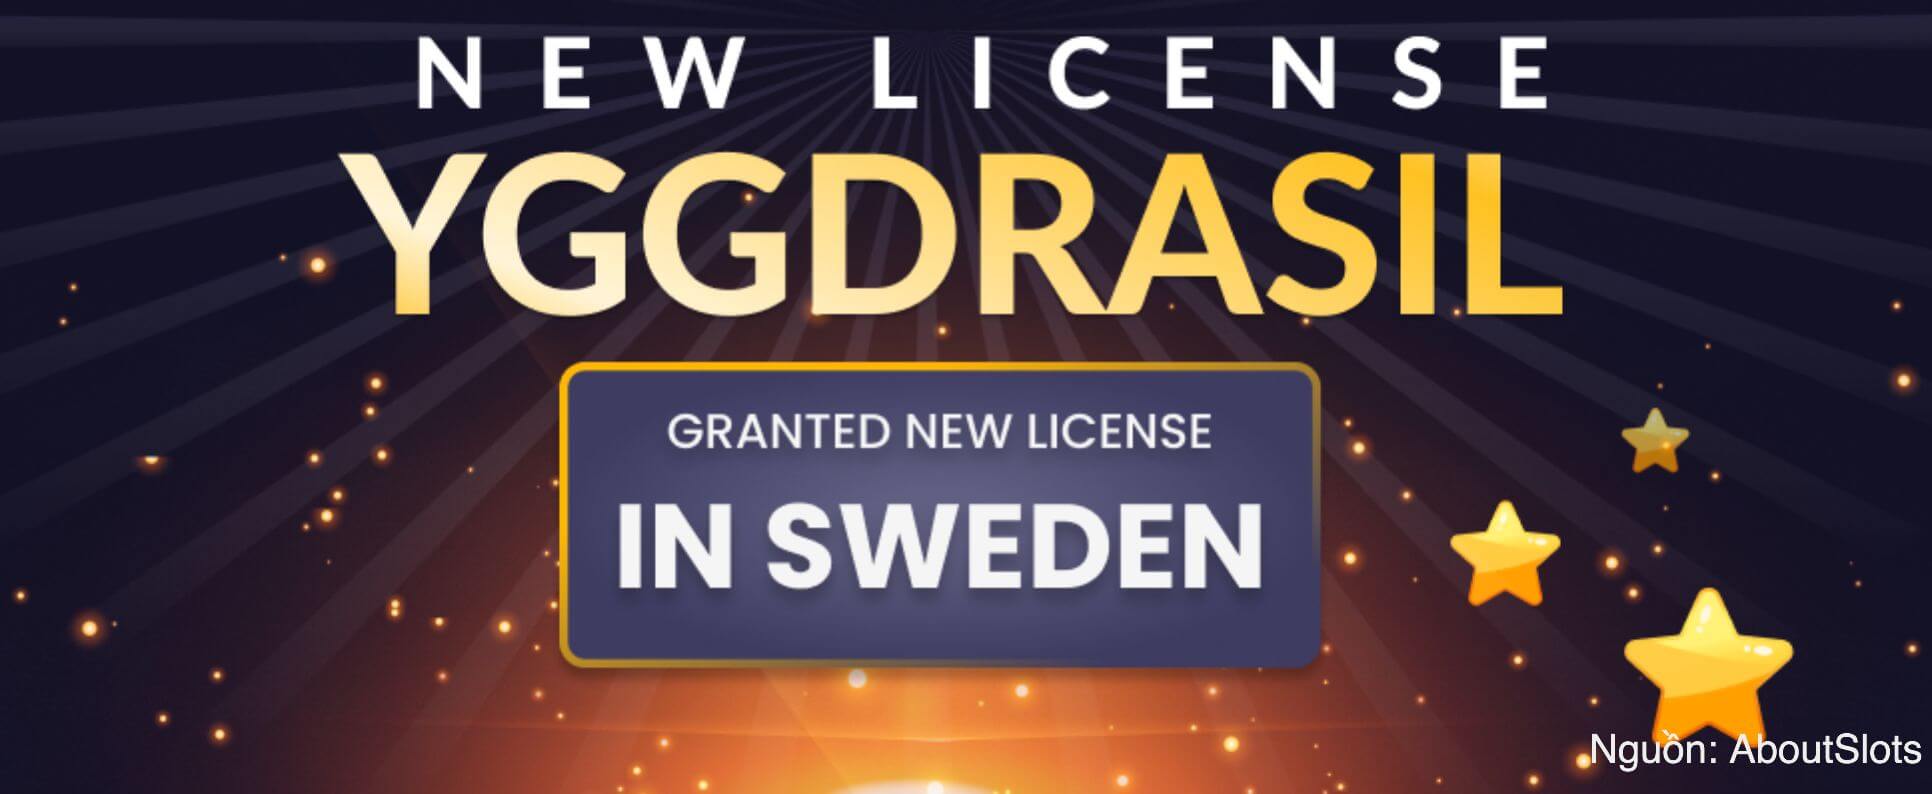 Yggdrasil đã được cấp giấy phép nhà cung cấp Thụy Điển